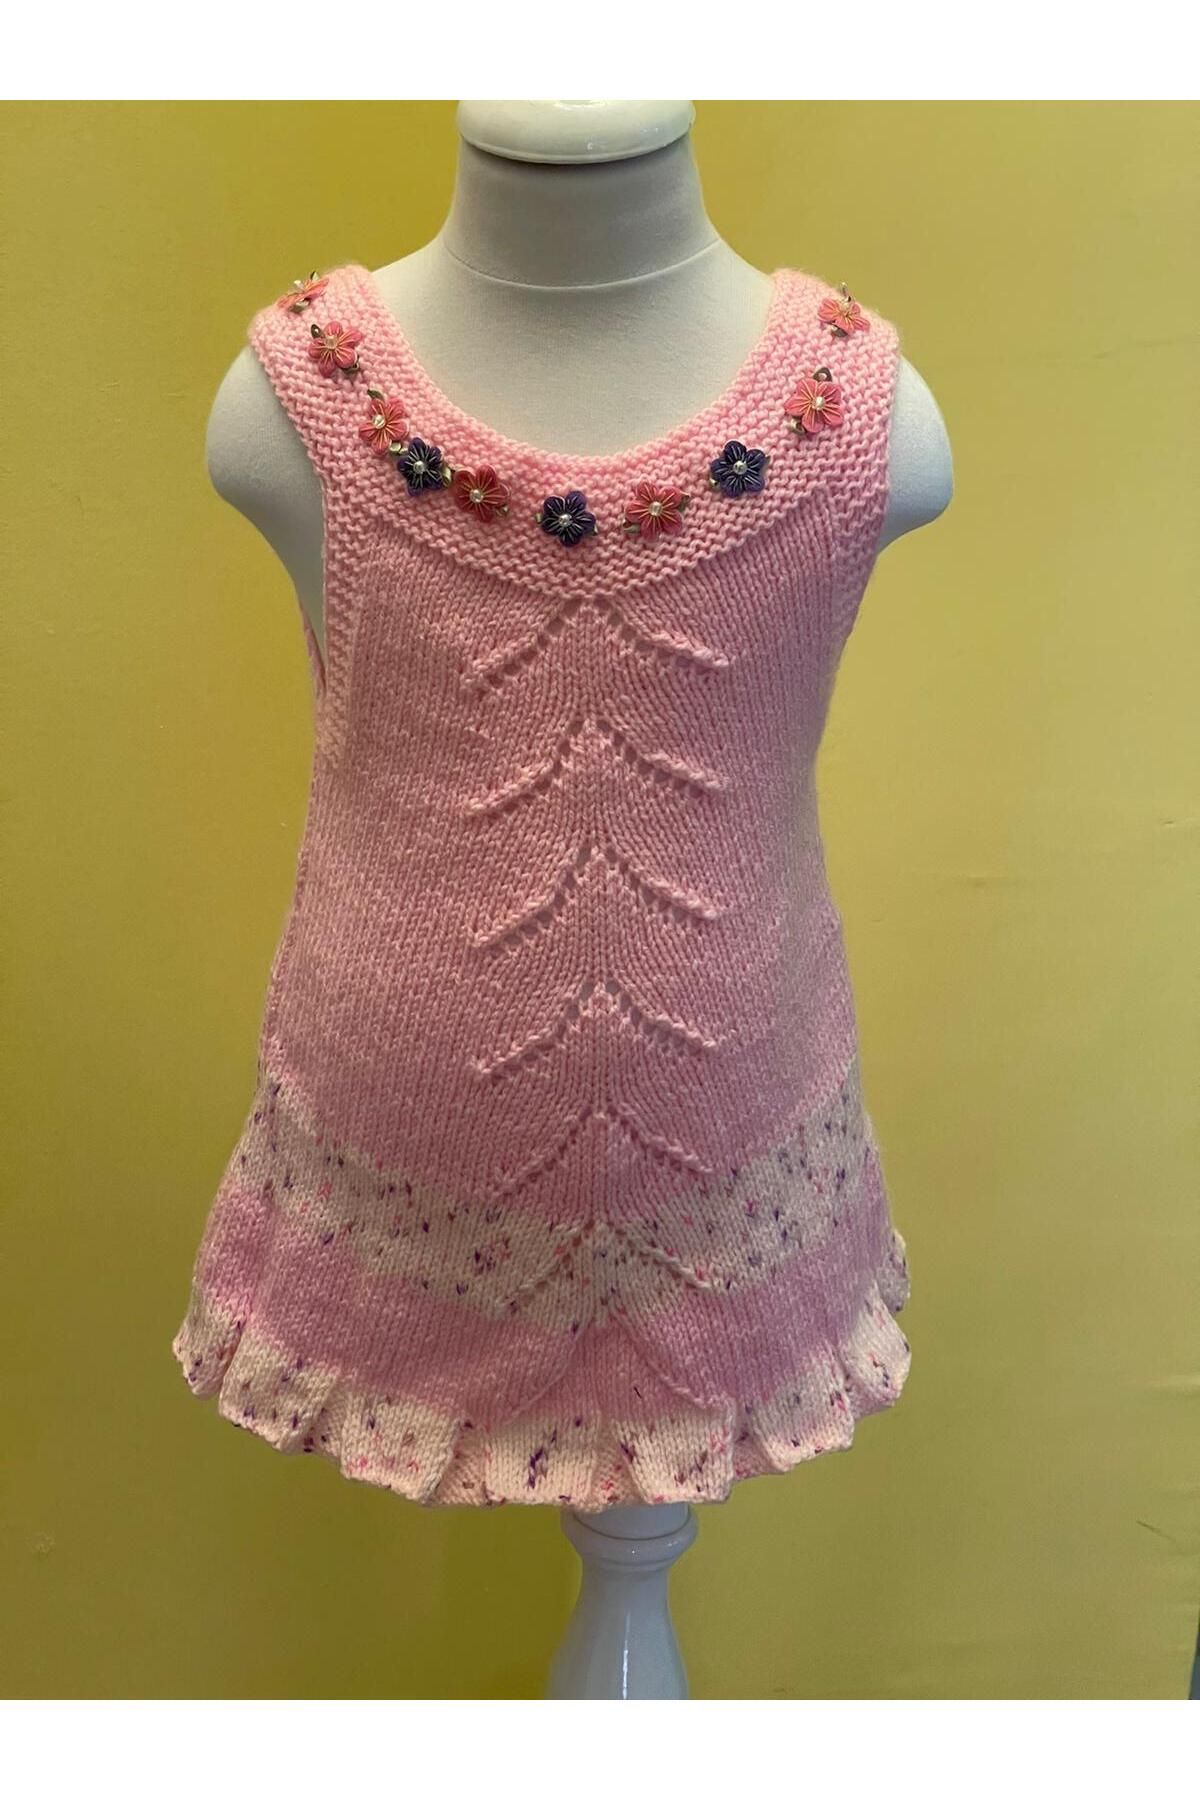 Gönülden Tasarım El Örgüsü 2/3 Yaş Kız Çocuk Triko Örme Elbise Bebek Elbise Çiçekli Elbise